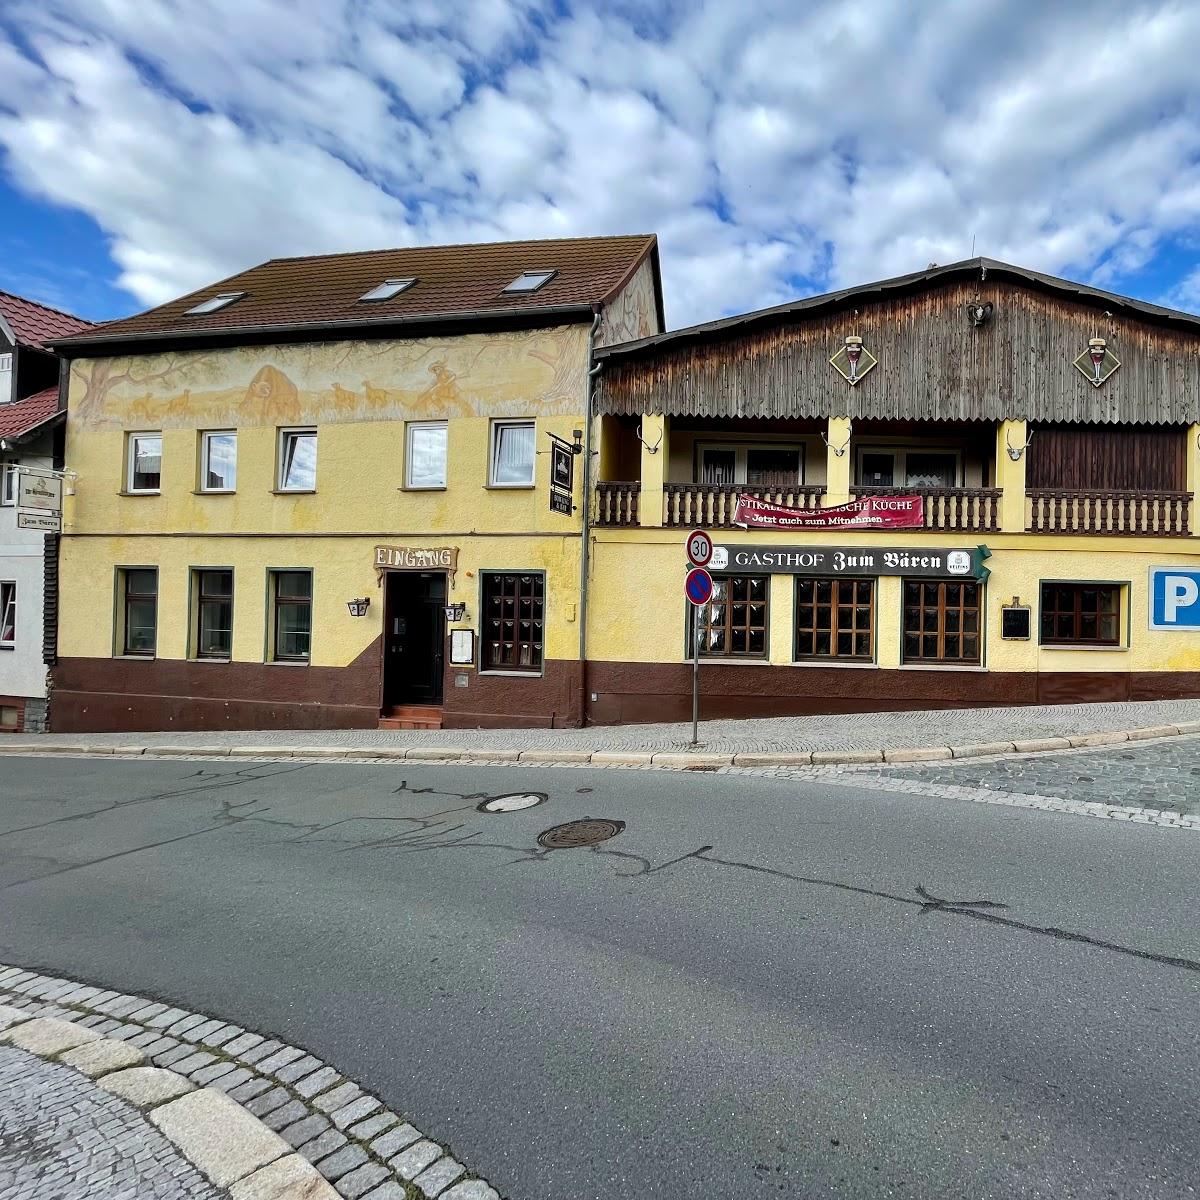 Restaurant "Gasthof zum Bären" in Quedlinburg